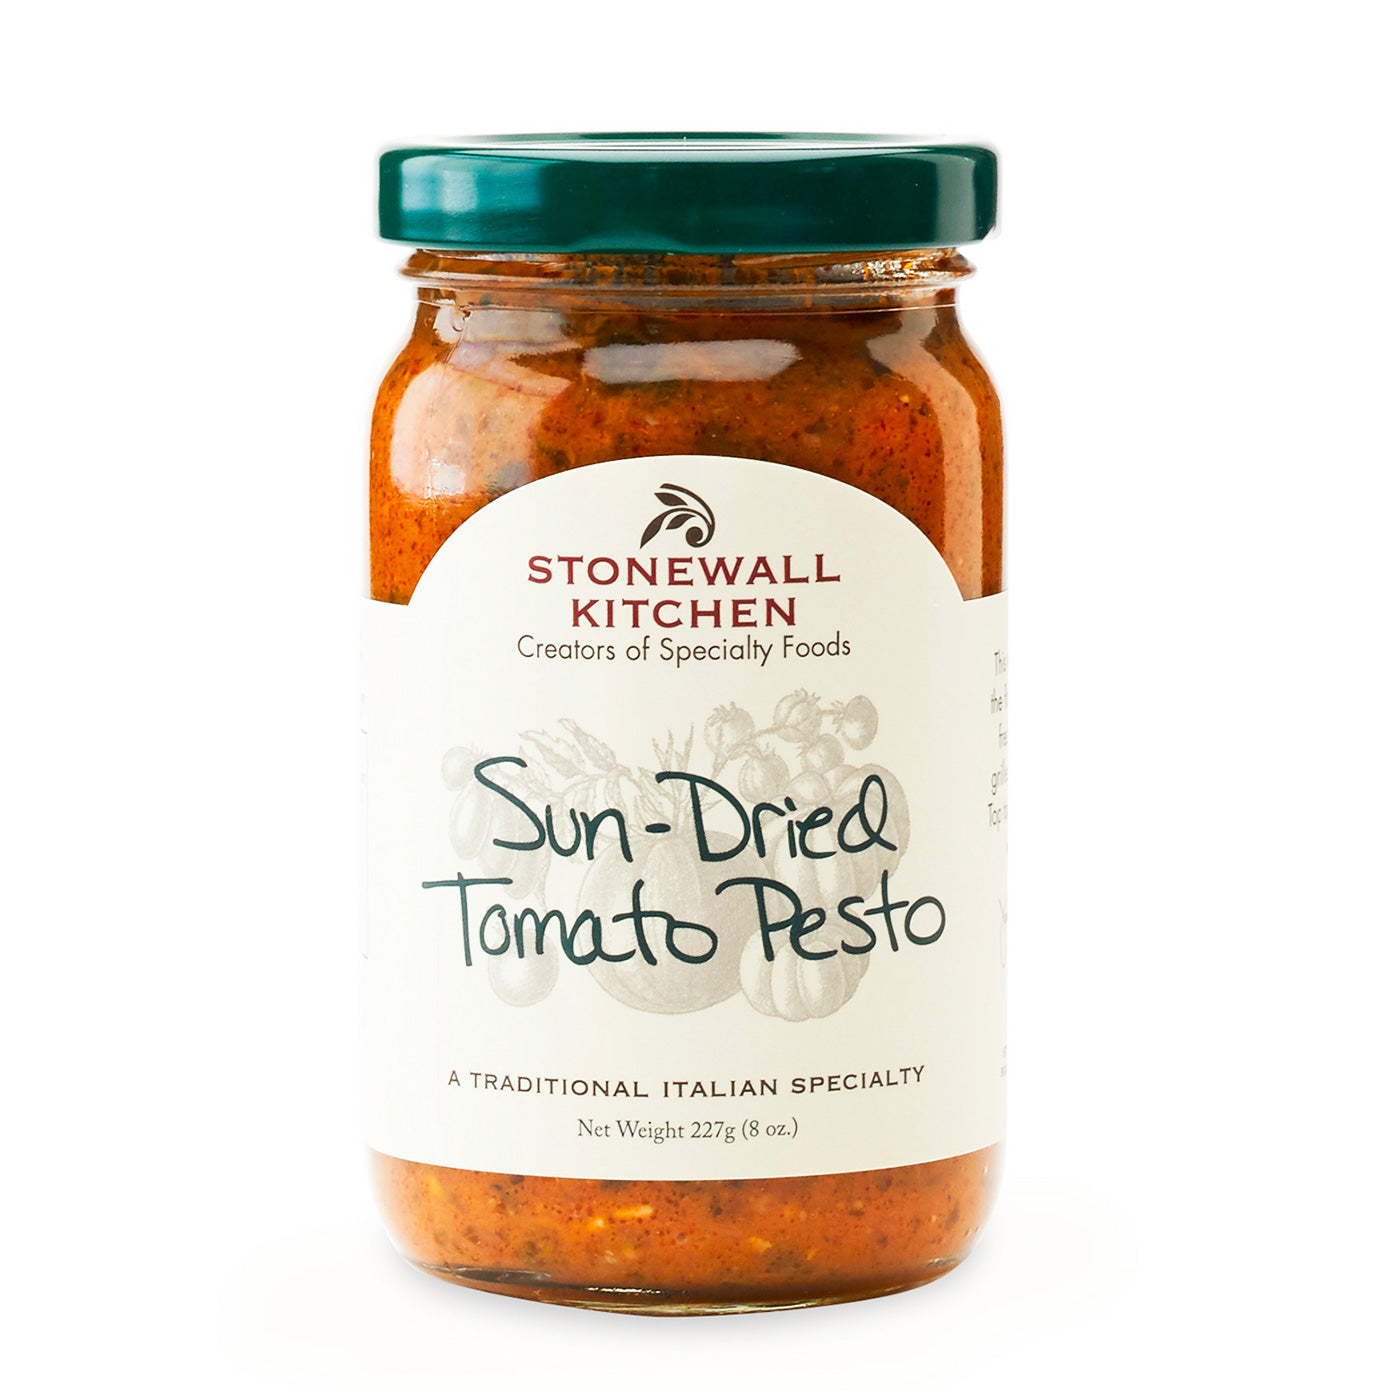 Stonewall Kitchen Sun-dried Tomato Pesto - Olive Oil Etcetera 